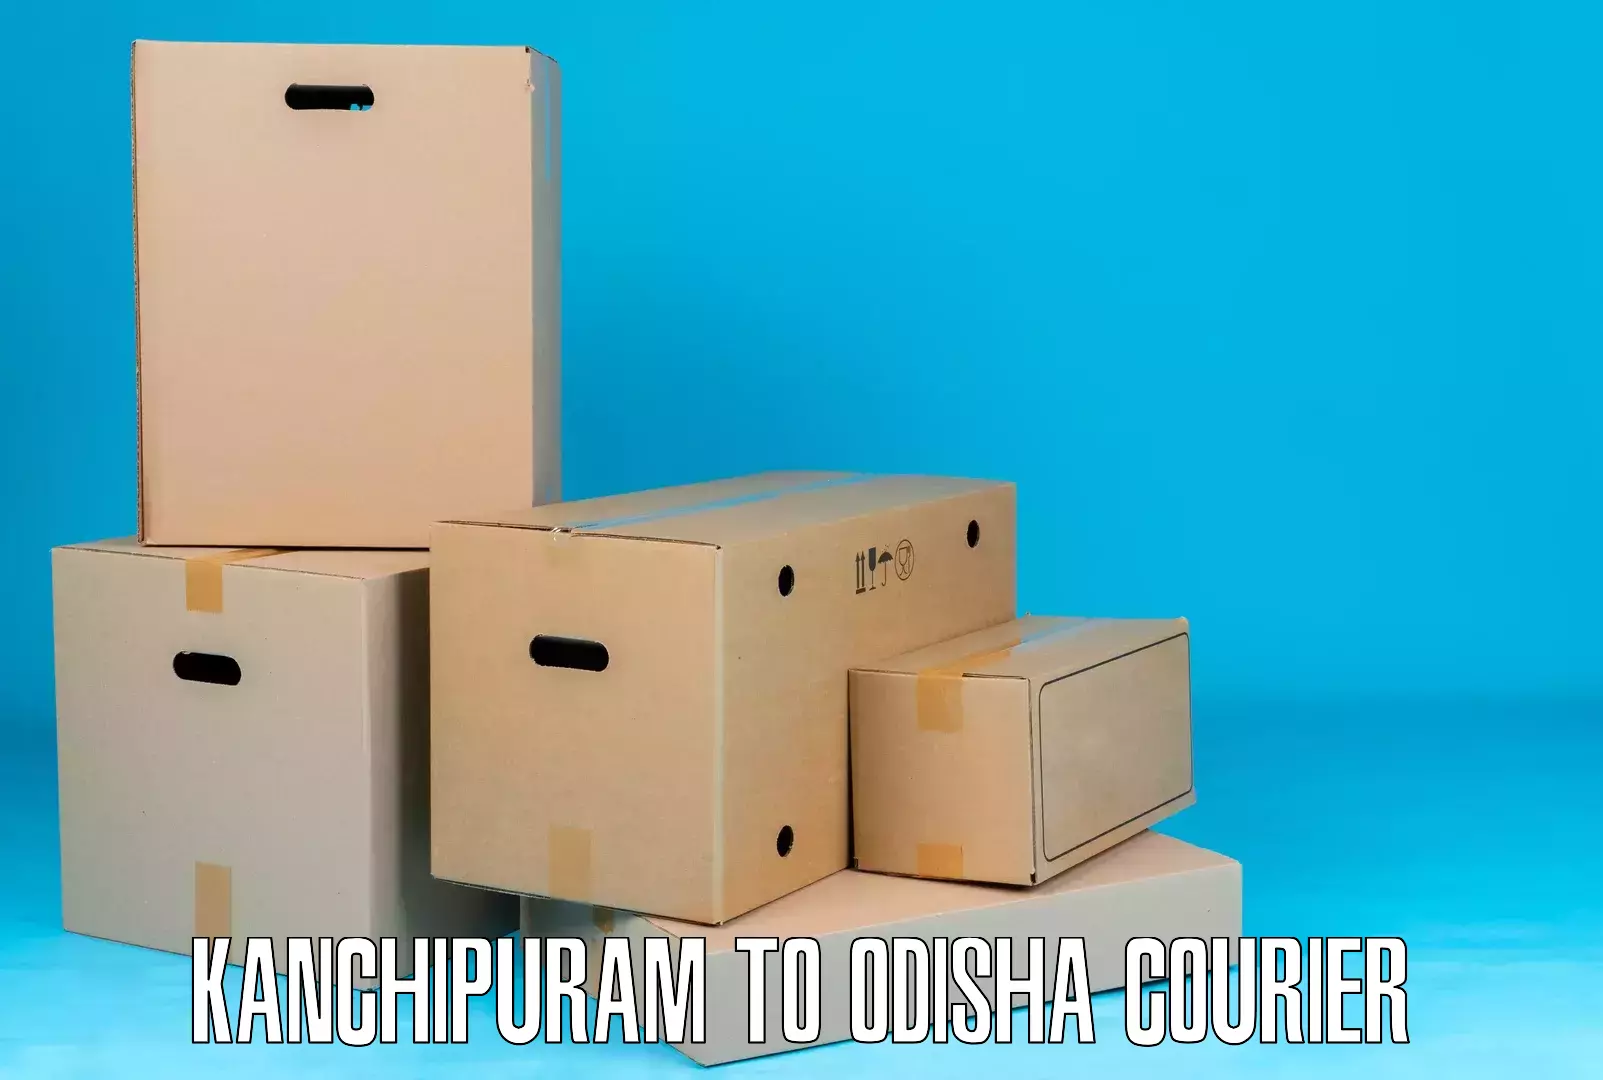 Corporate courier solutions Kanchipuram to Narasinghpur